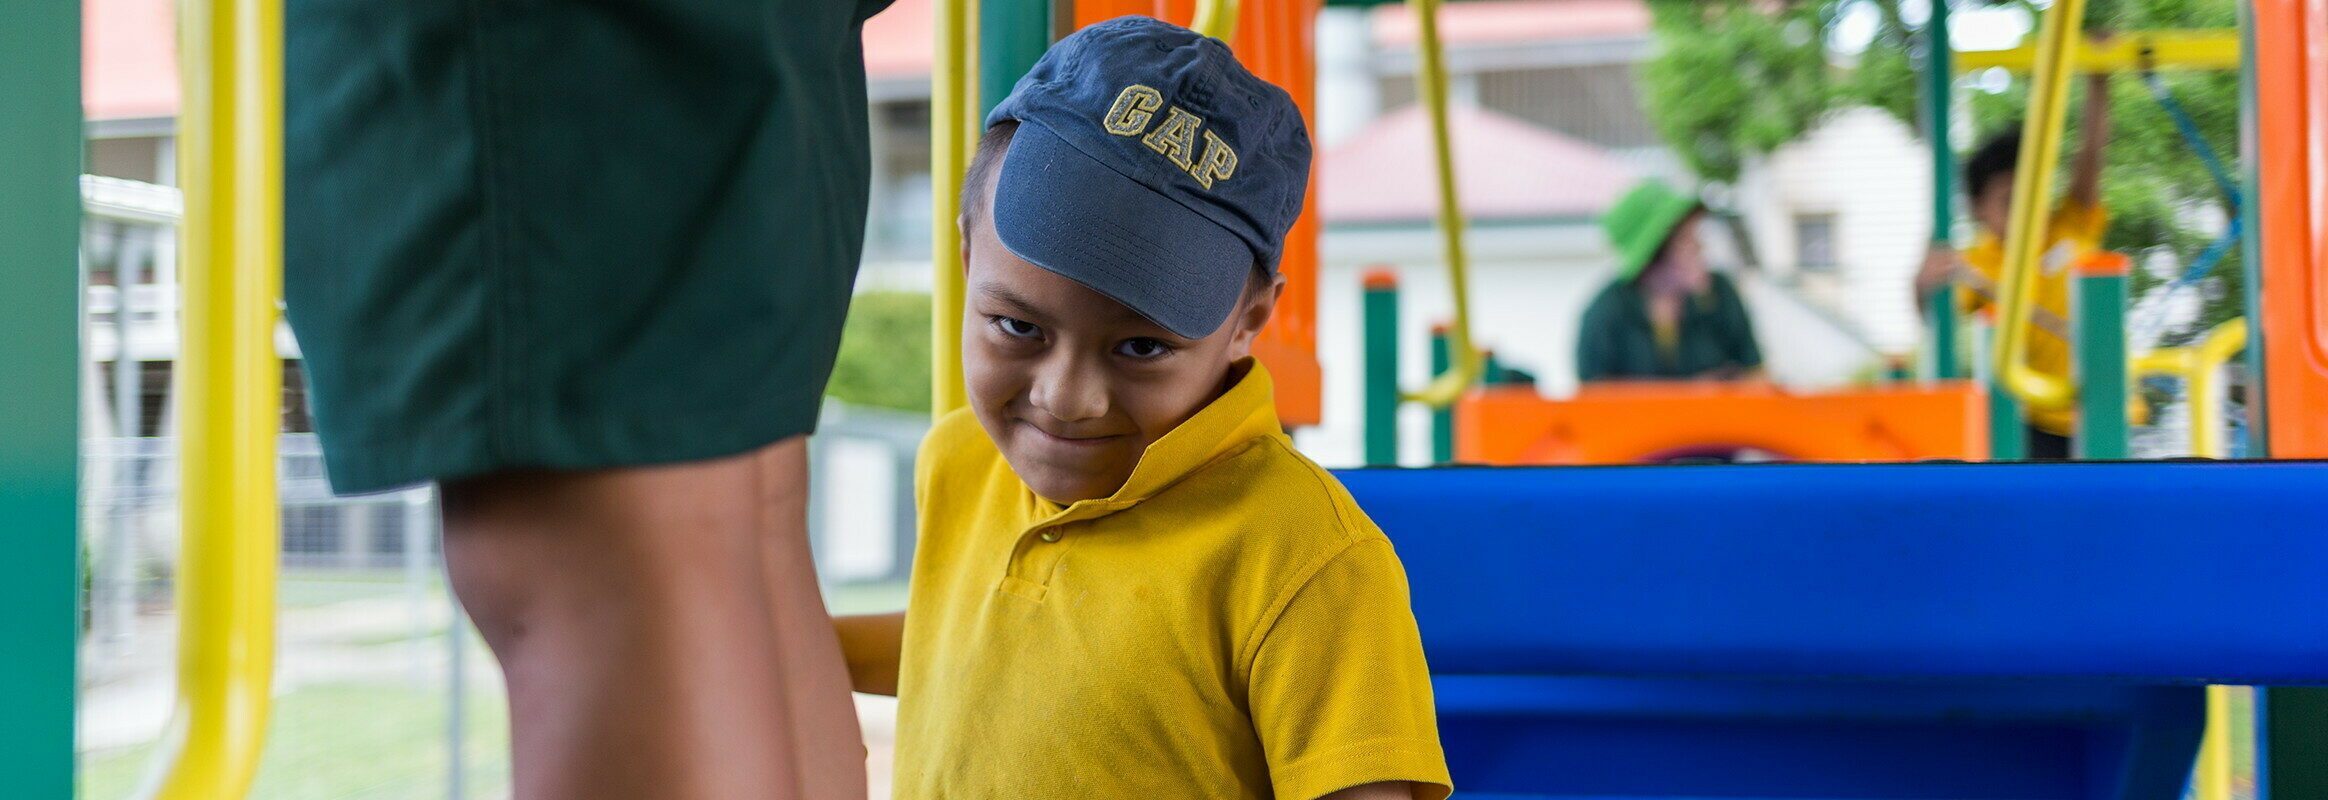 Monty, een jonge Samoaanse jongen op een speelplaats, glimlachend naar de camera